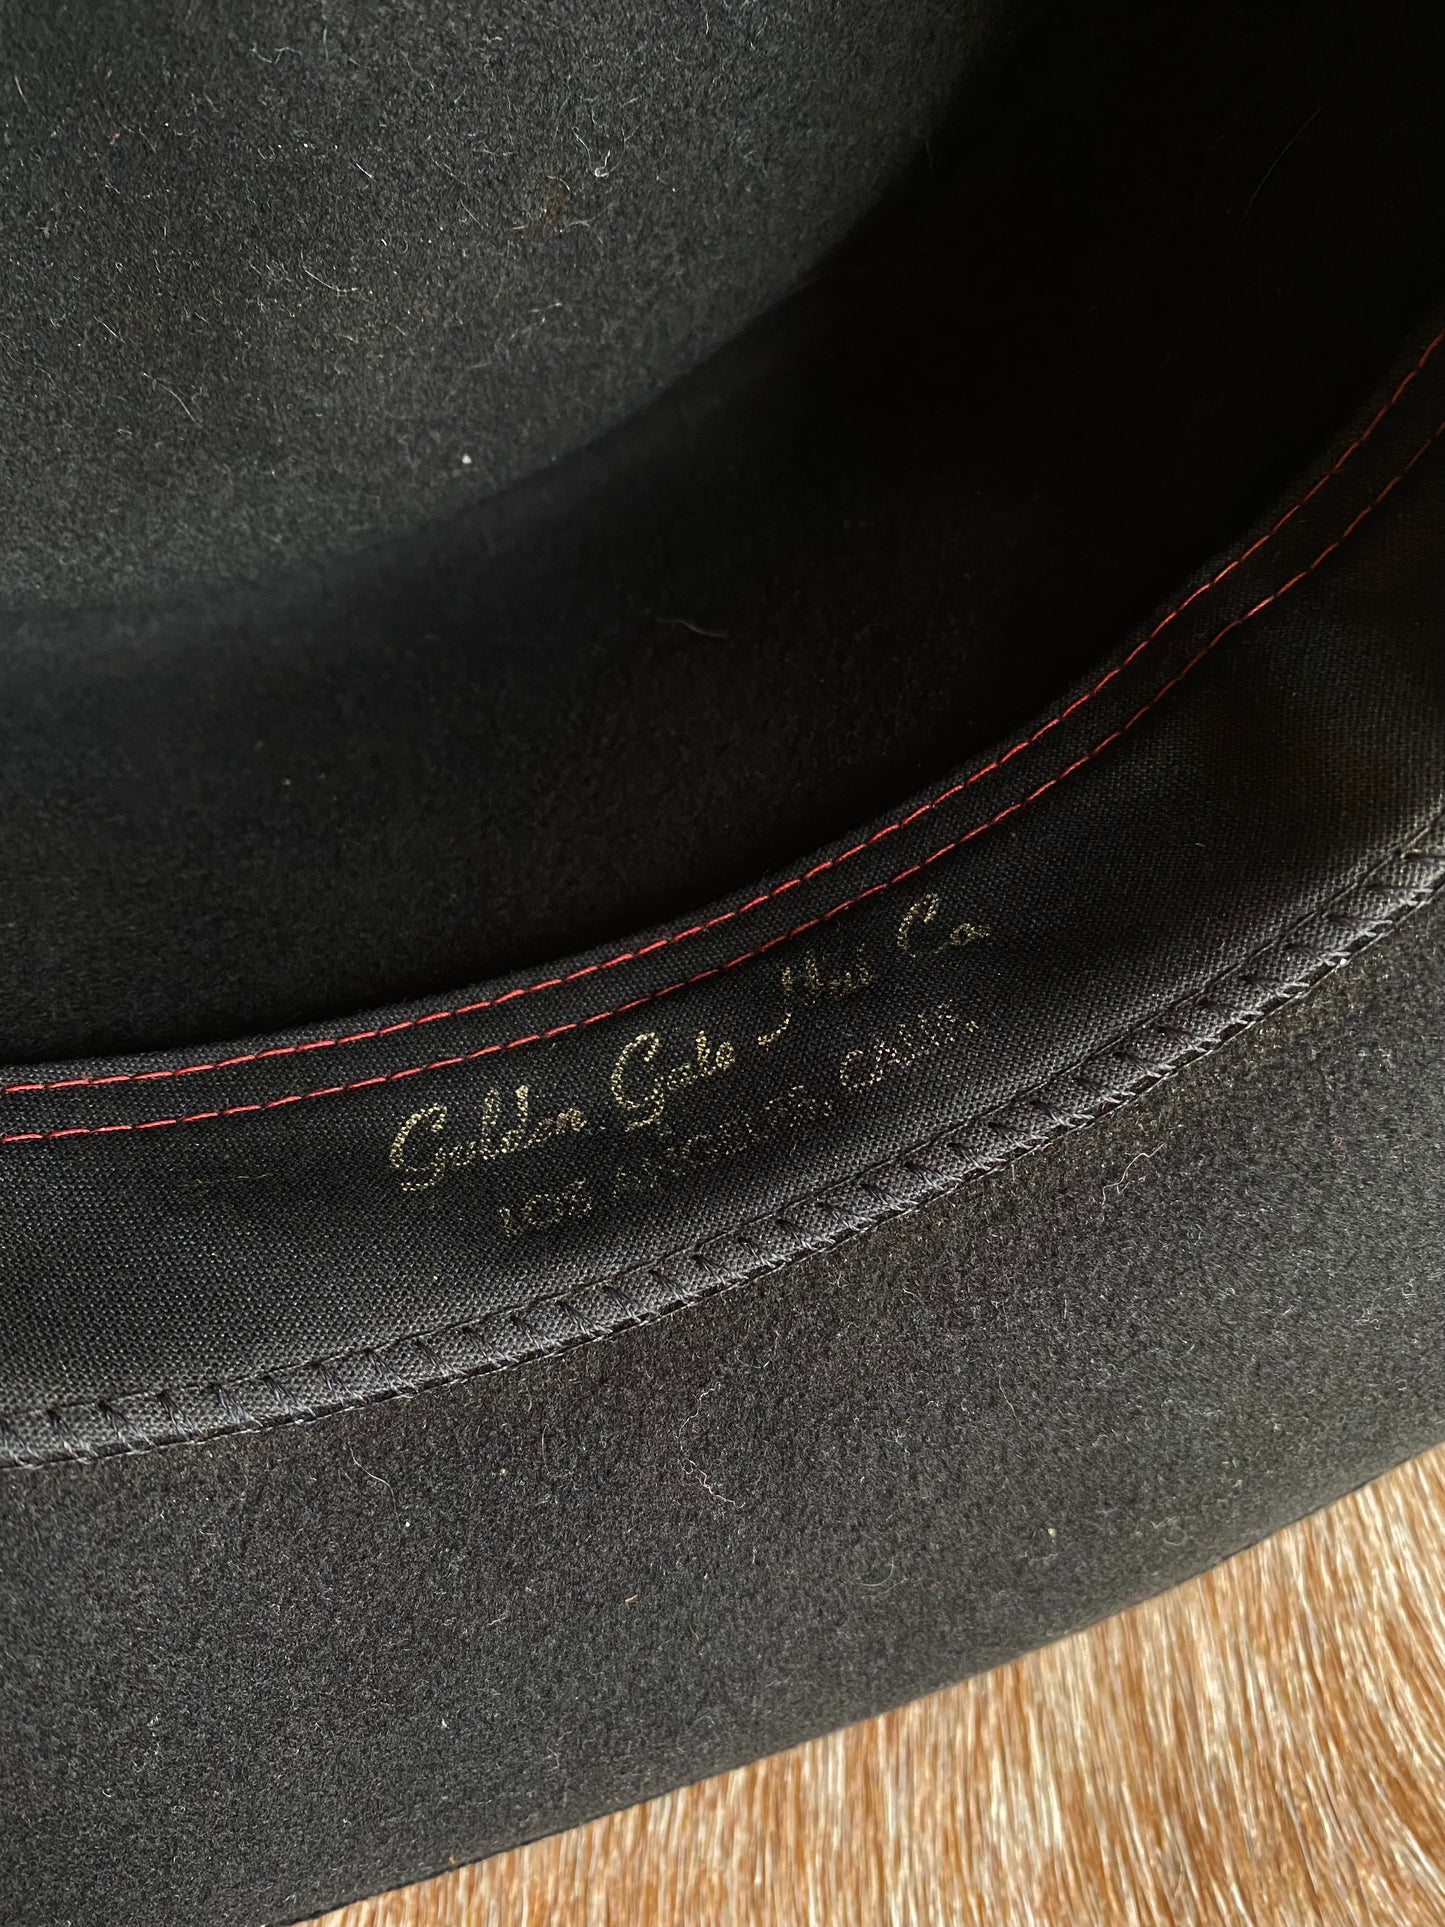 Vintage Black Felt Cowboy Hat w/ Leather Braided Hat Band